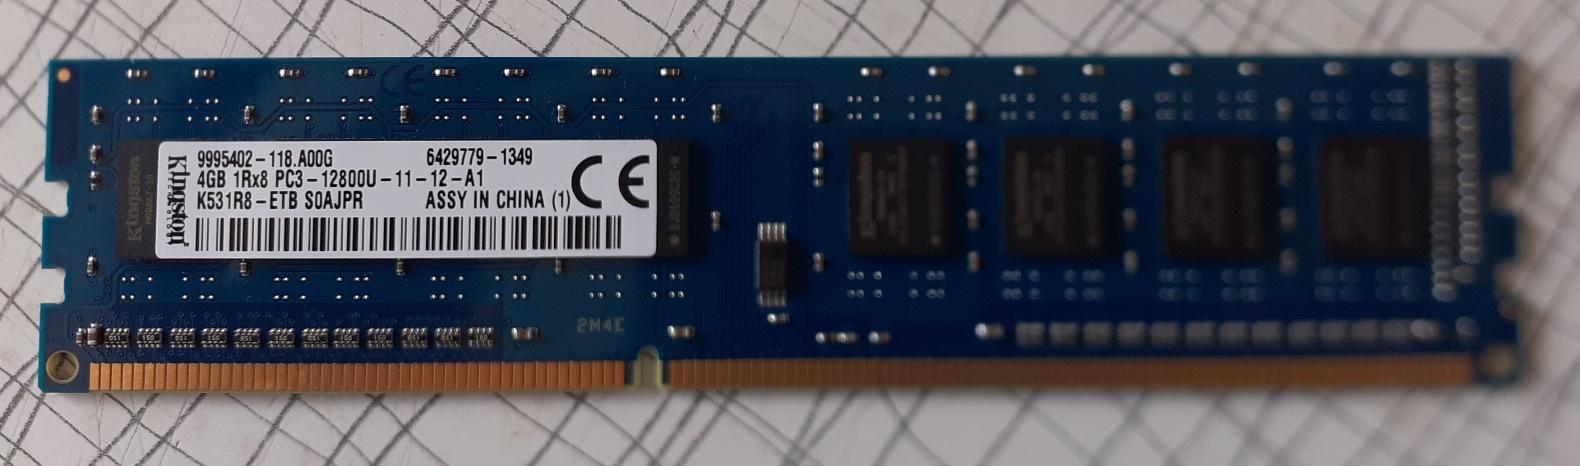 RAM DDR3 4GB 1Rx8 PC3-12800U - Počítače a hry